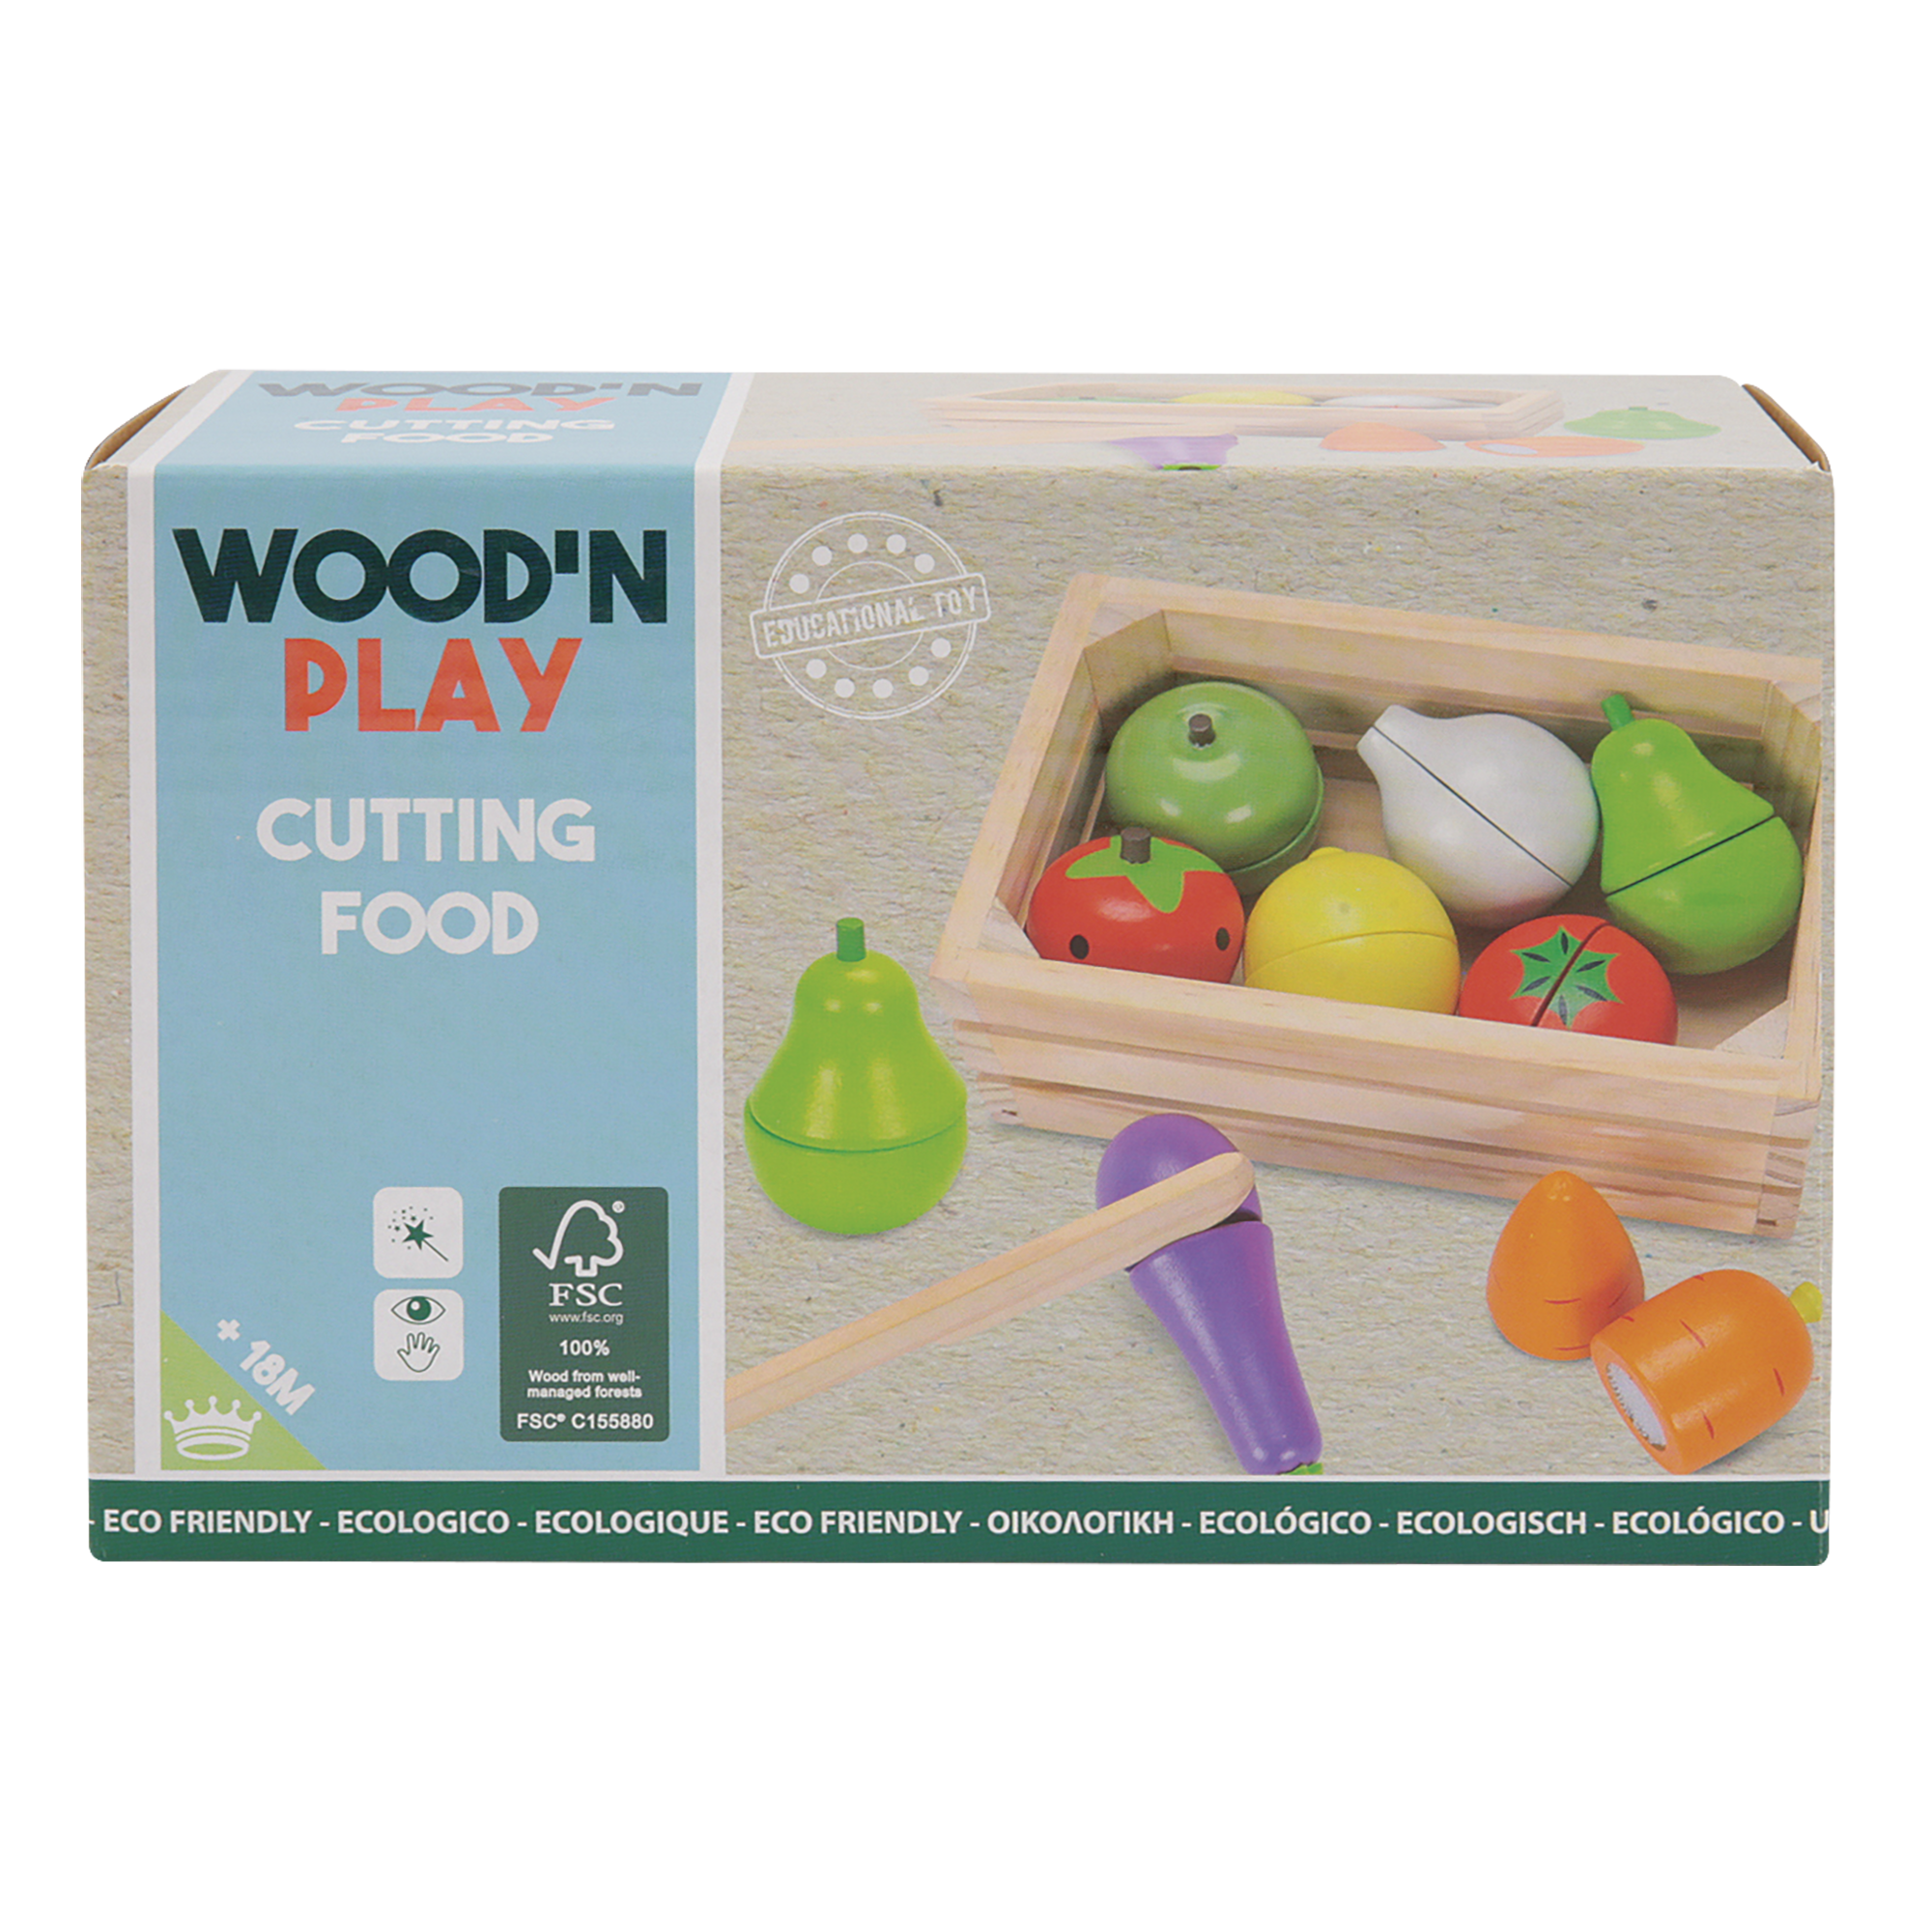 Acquista il frullatore giocattolo in legno KidKraft con frutta.